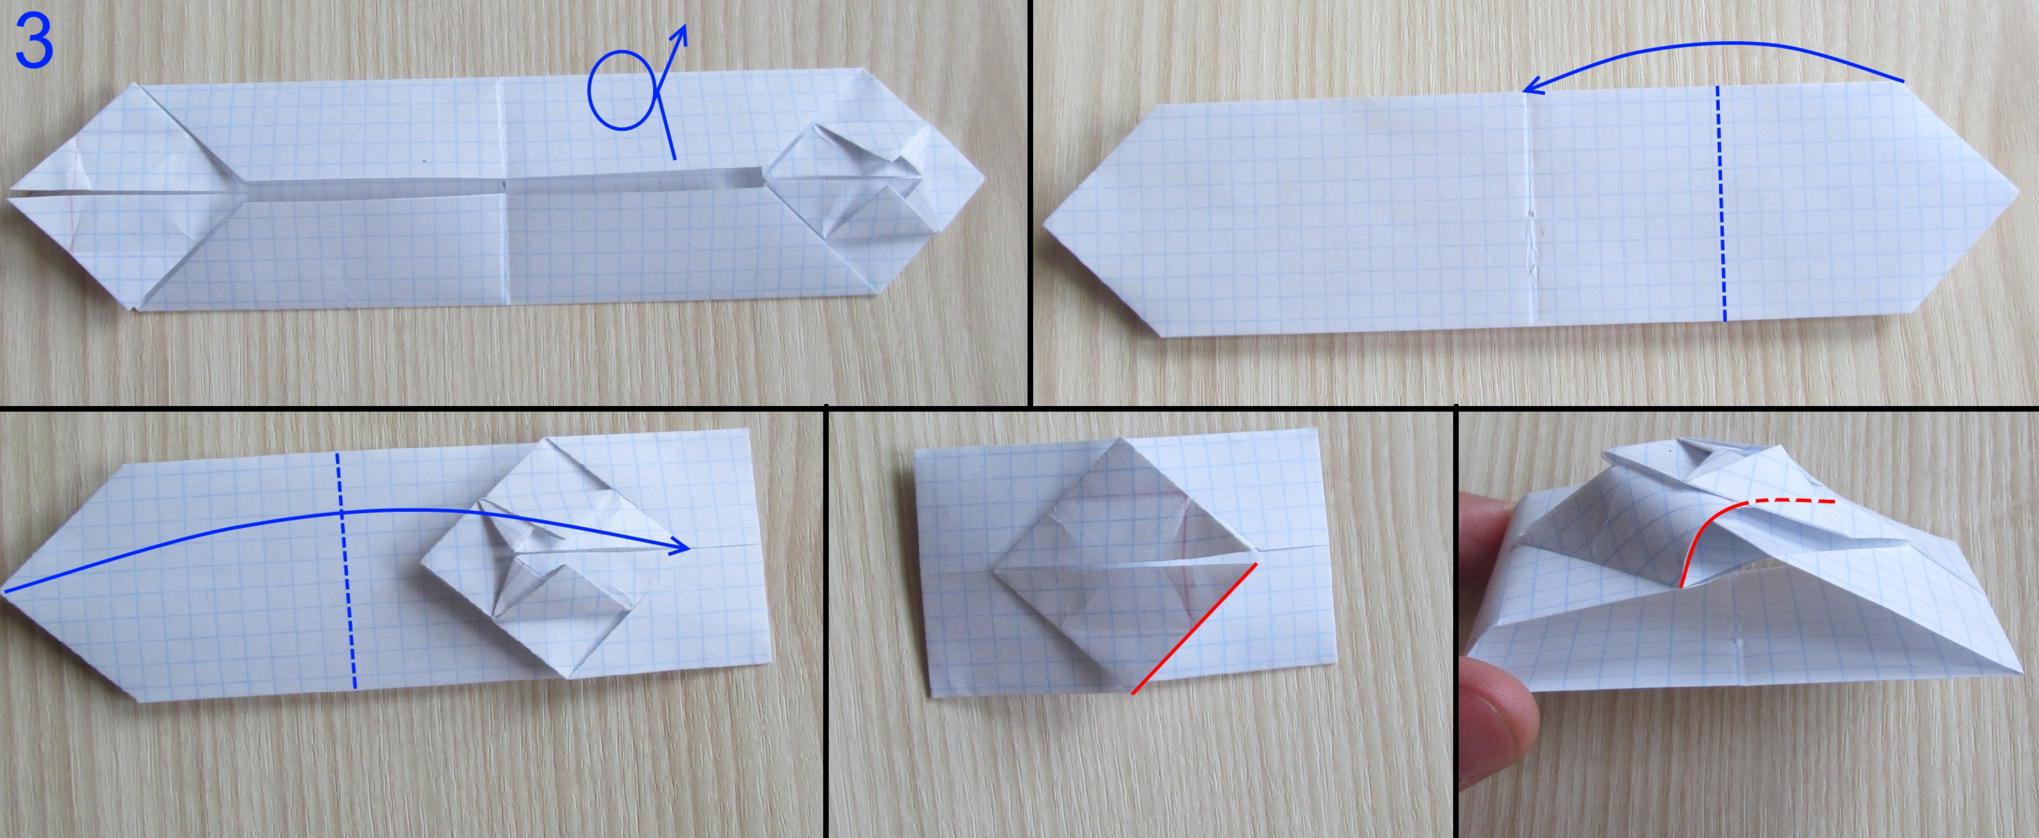 Танк из бумаги а4. Оригами танк Абрамс. Как сделать оригами танка из бумаги. Танк из листа а4. Оригами танк для начинающих пошагово.